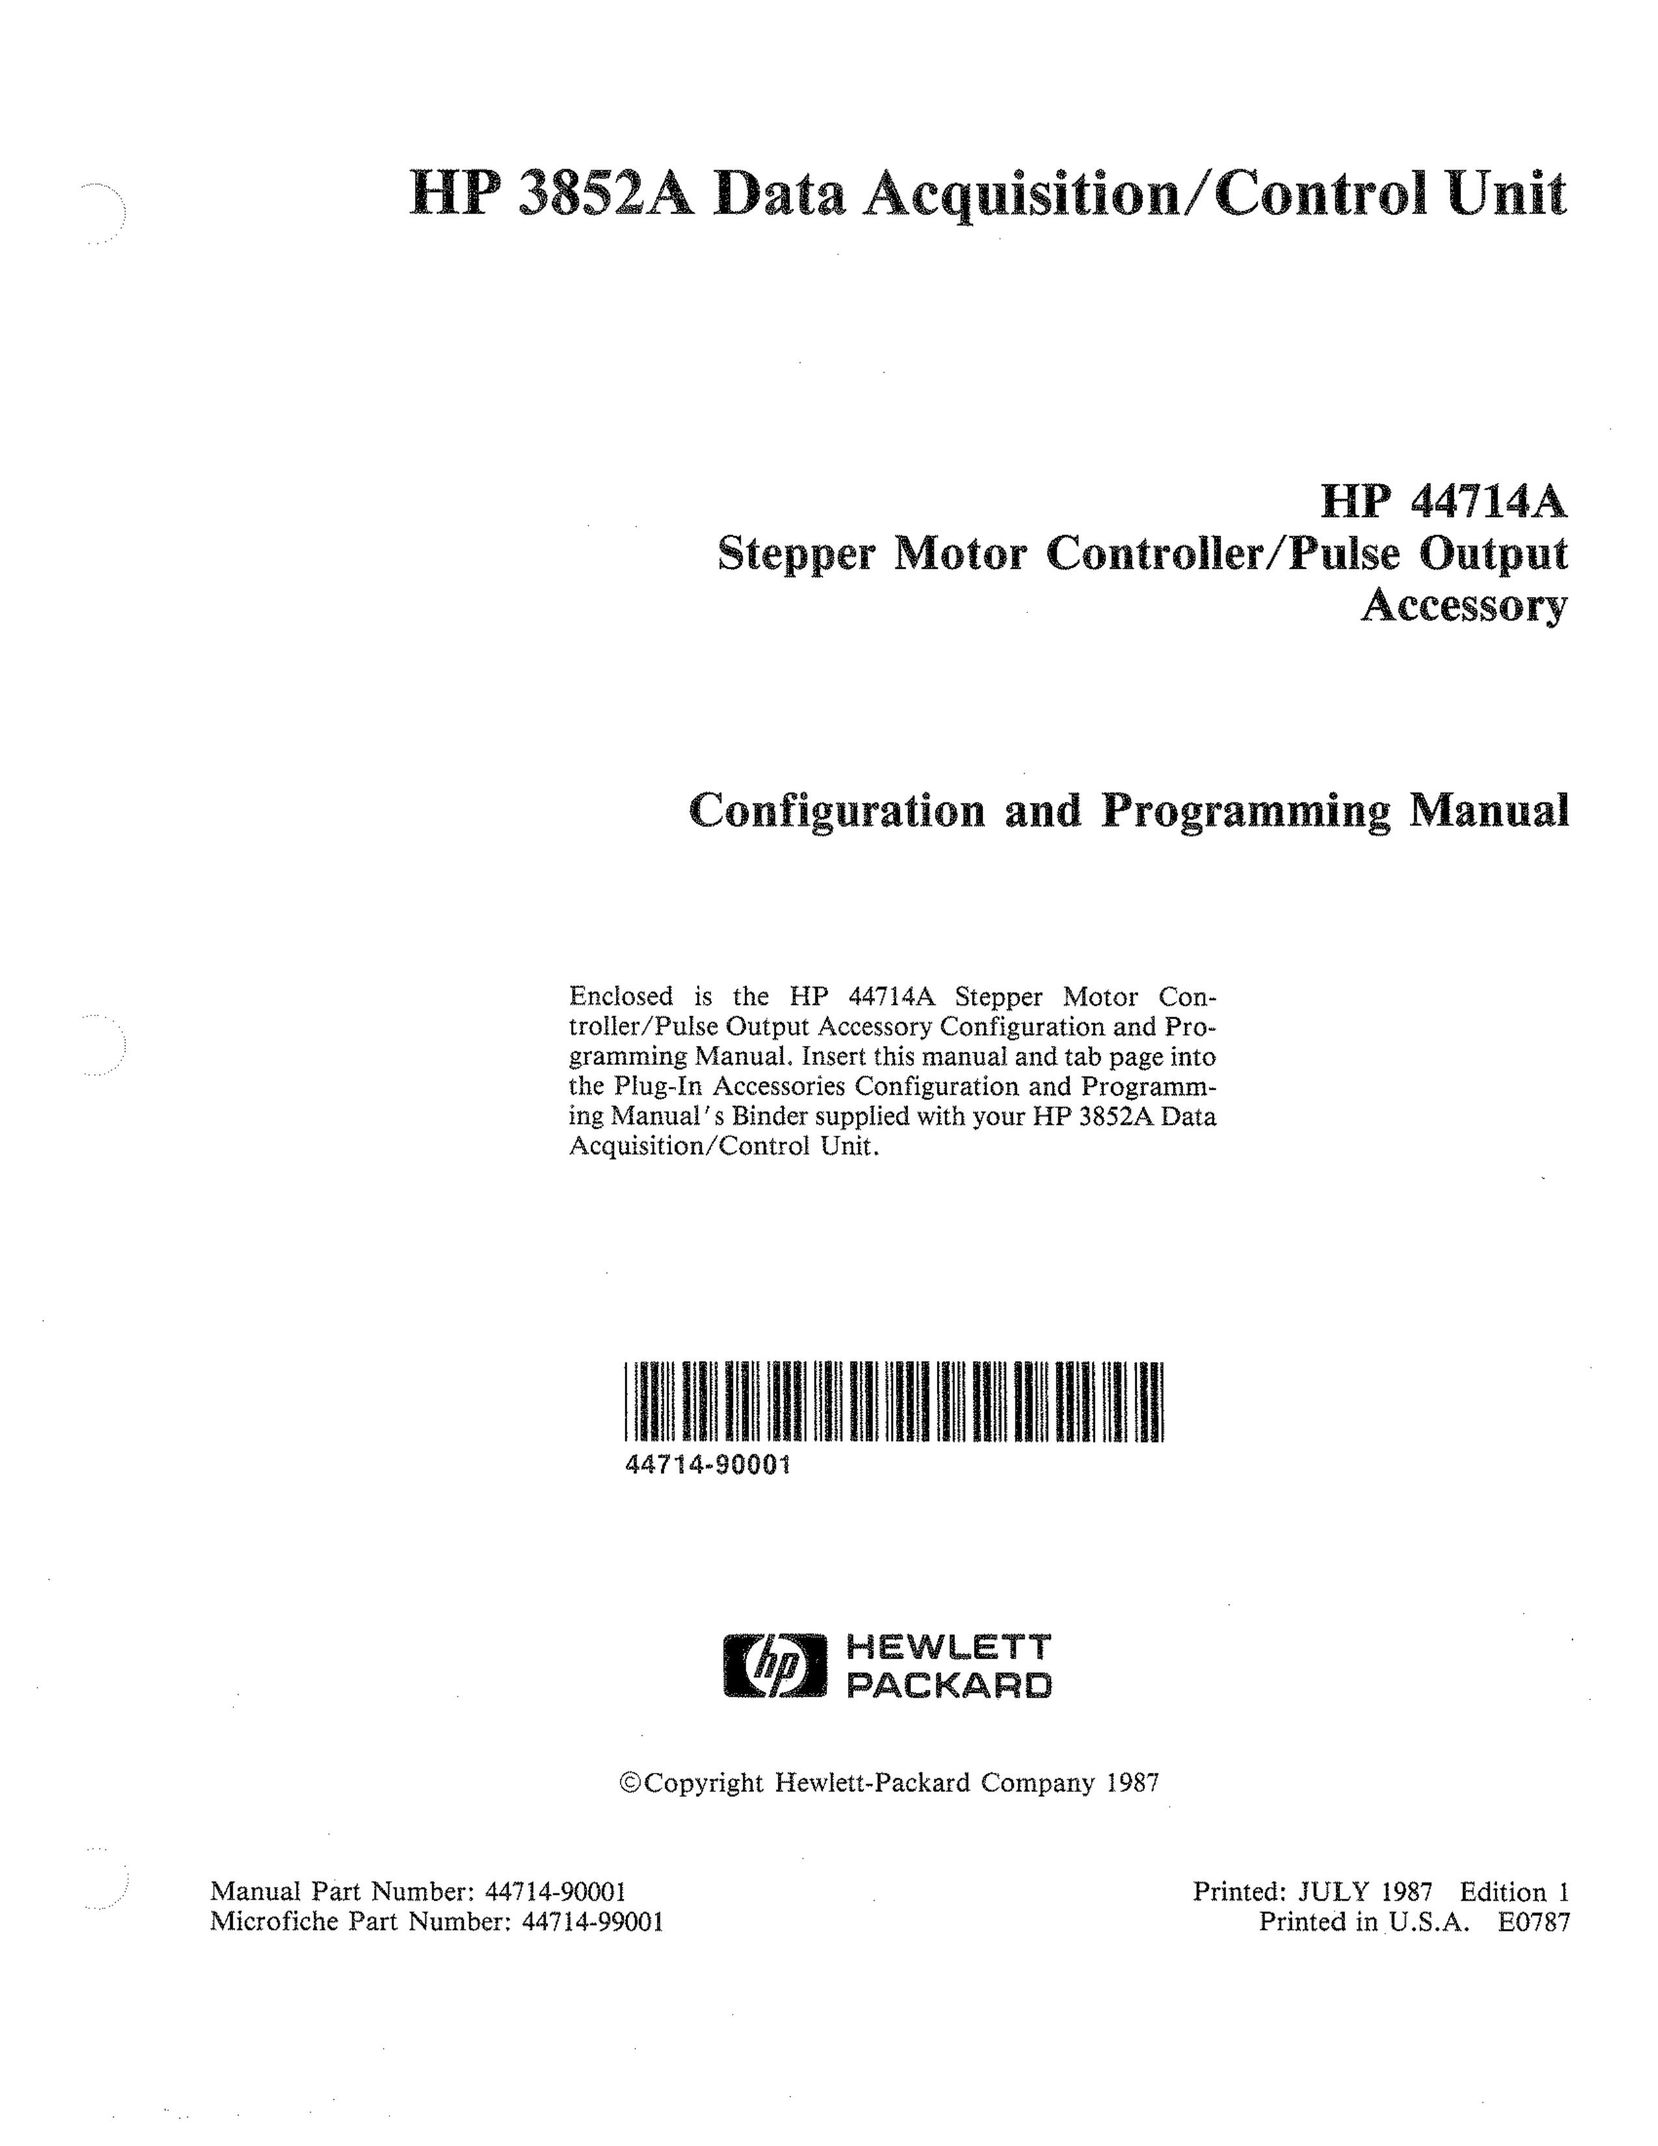 HP (Hewlett-Packard) HP 44714A Barcode Reader User Manual